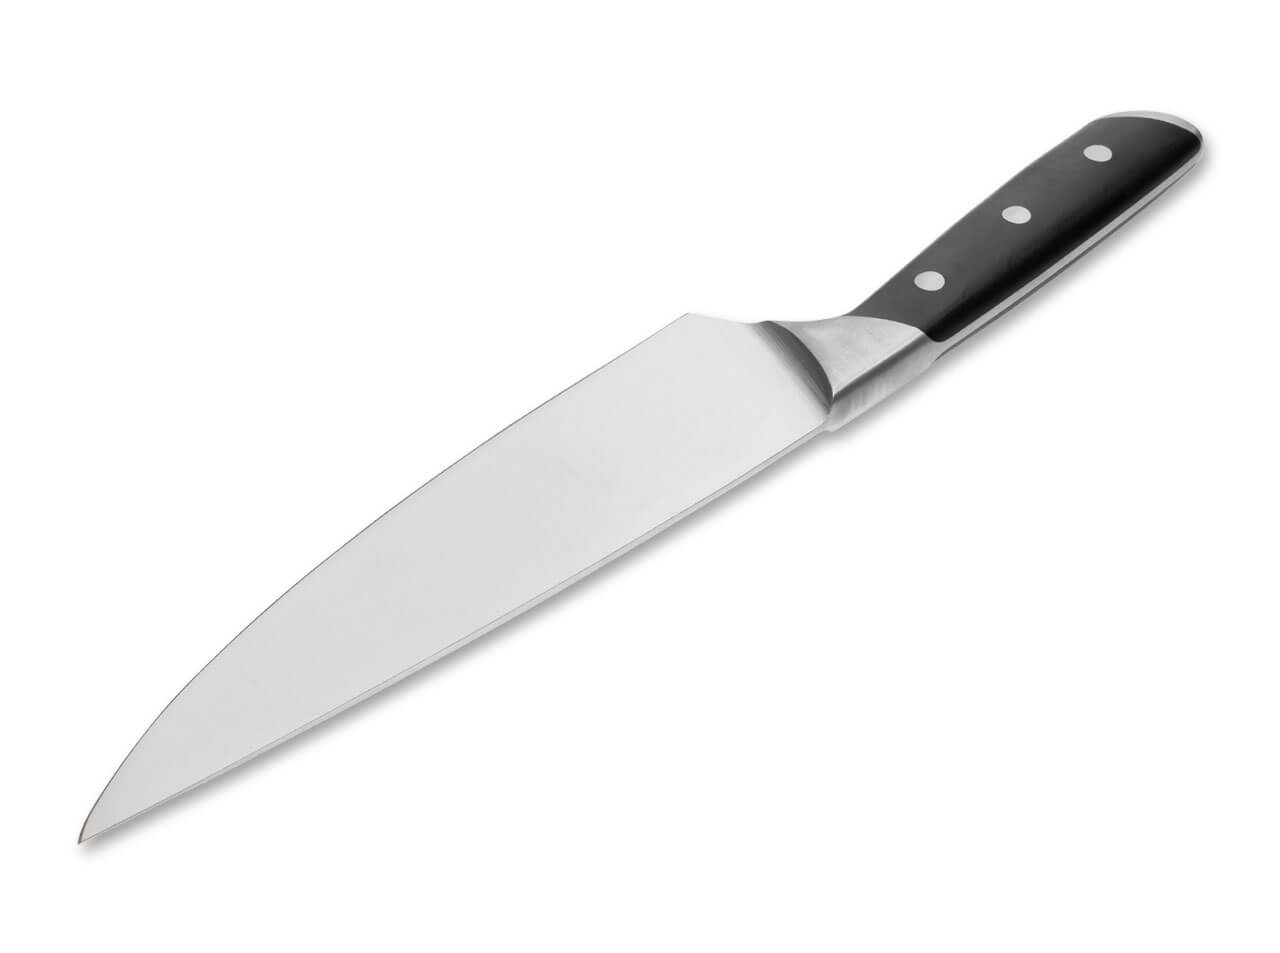 https://www.bokerusa.com/media/image/28/33/08/boeker-manufaktur-forge-chef-s-knife-03bo501_2.jpg